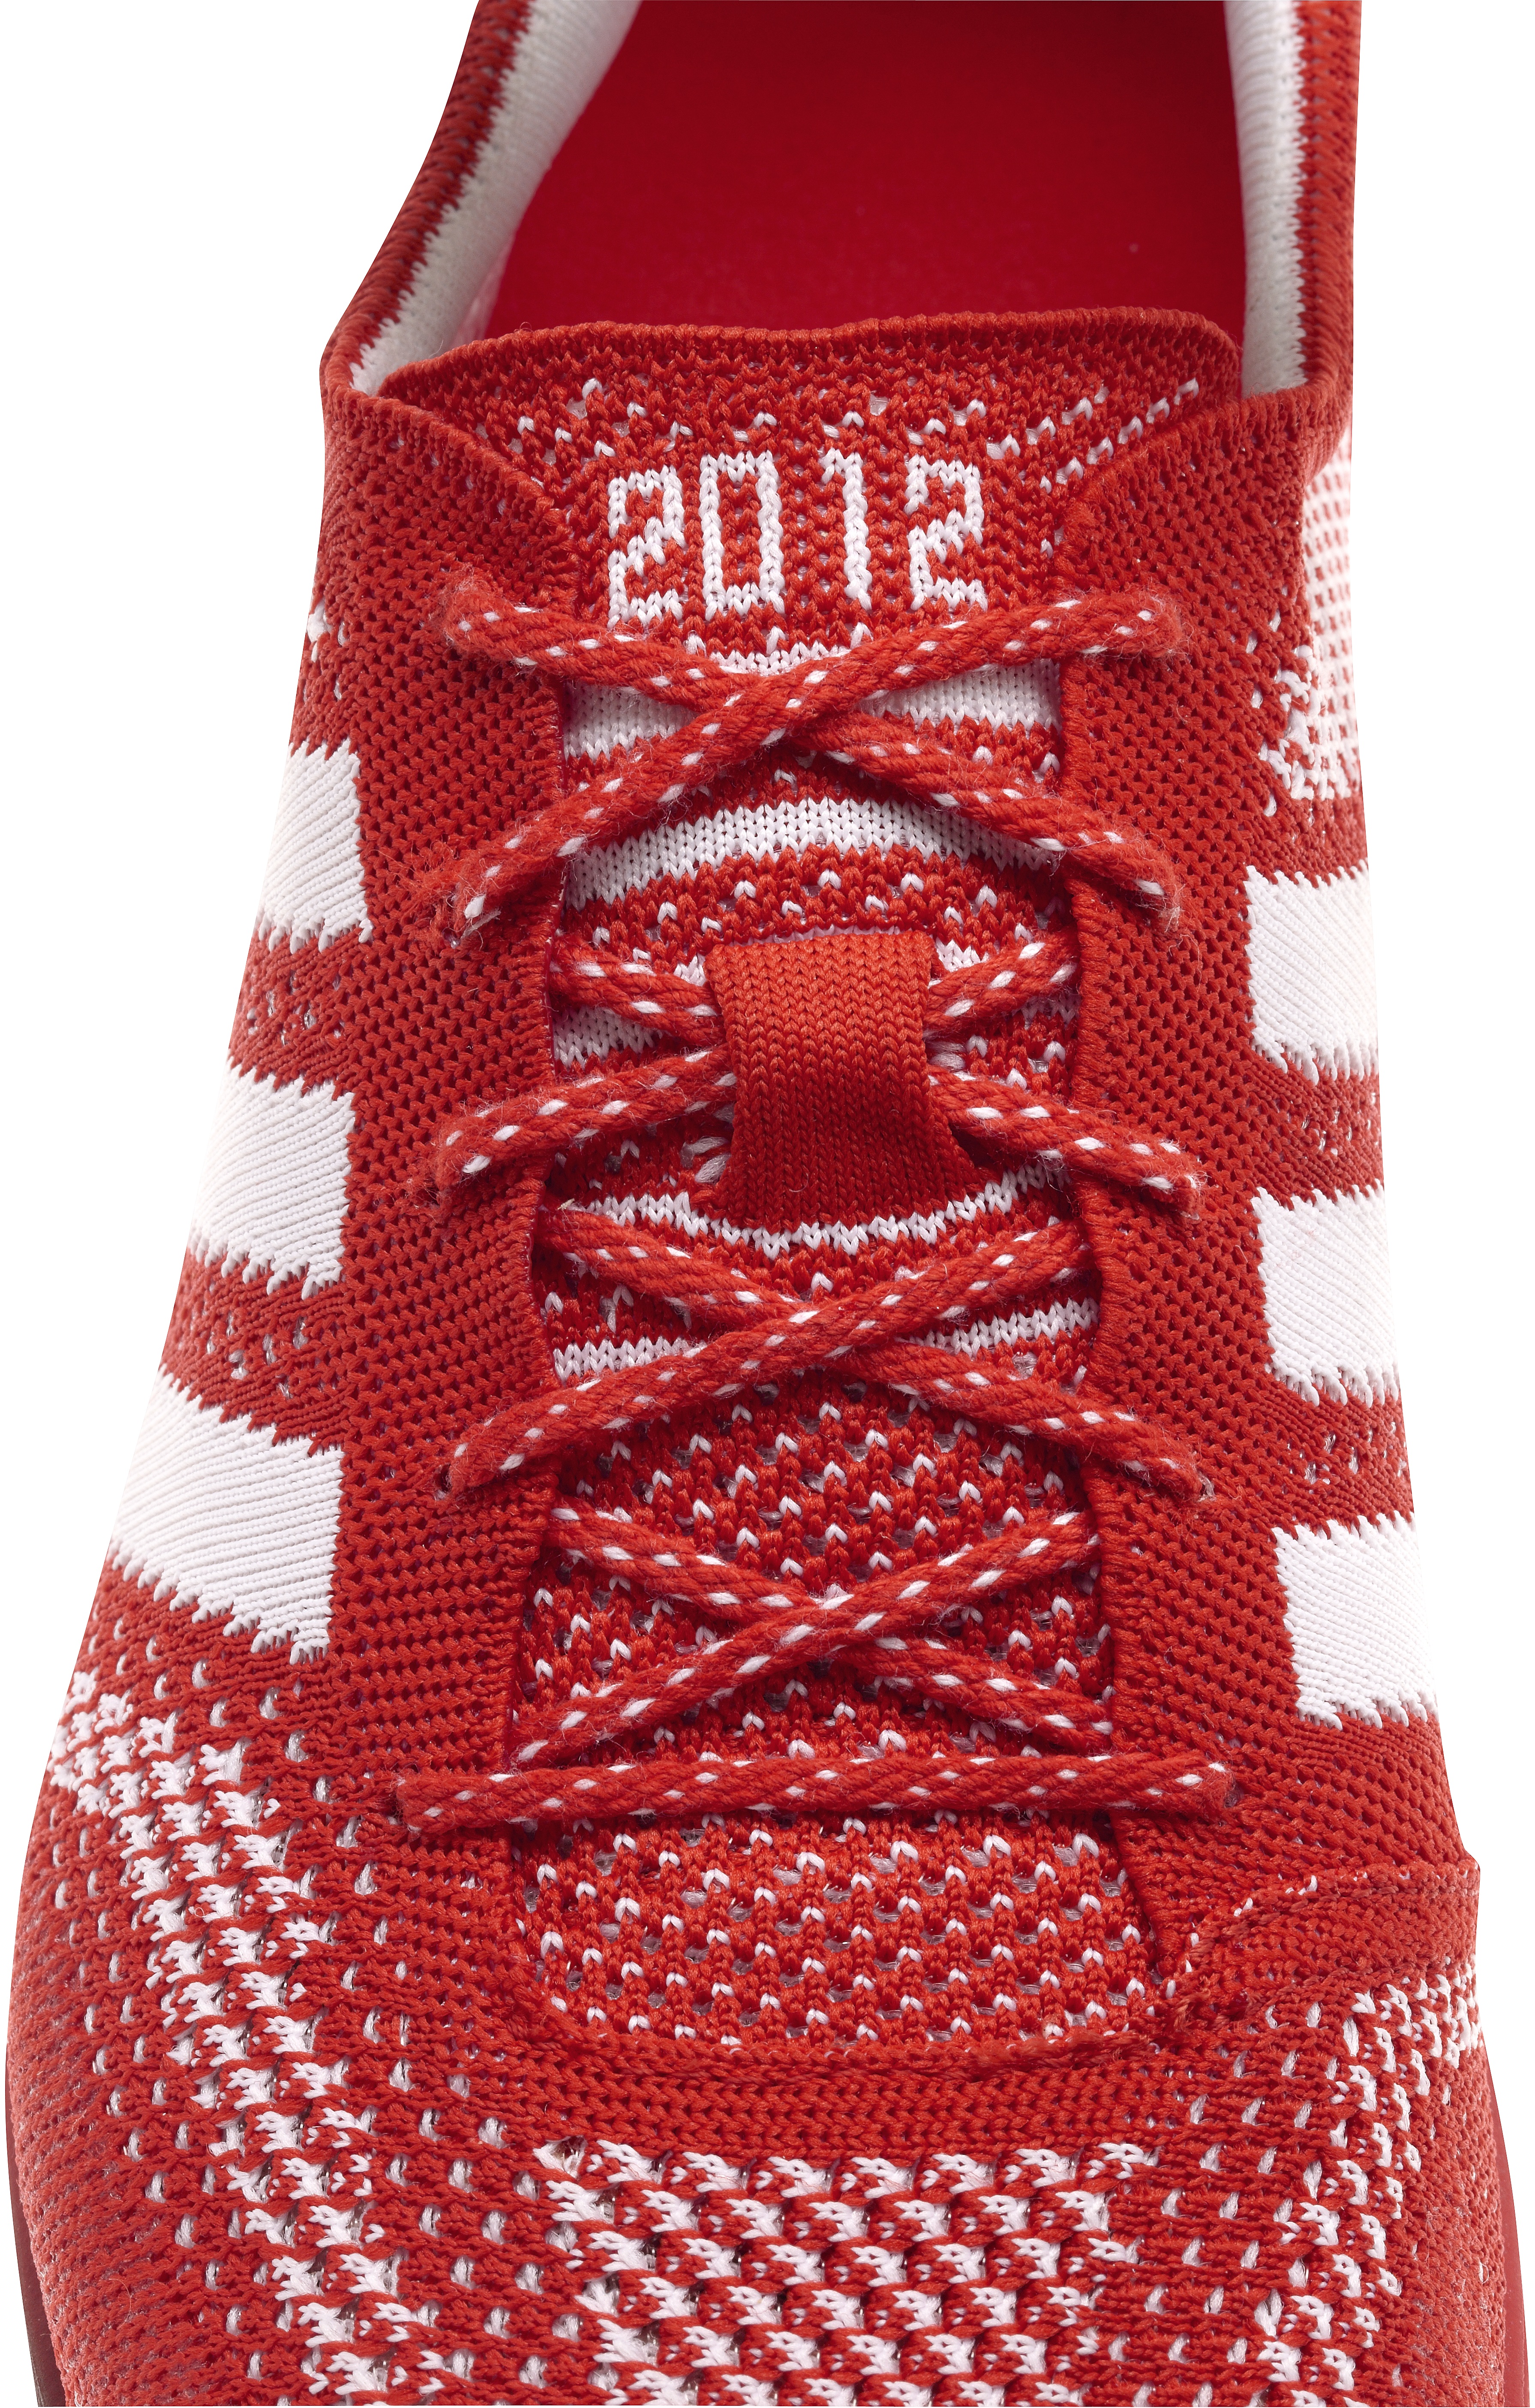 Adidas unveils Primeknit shoe